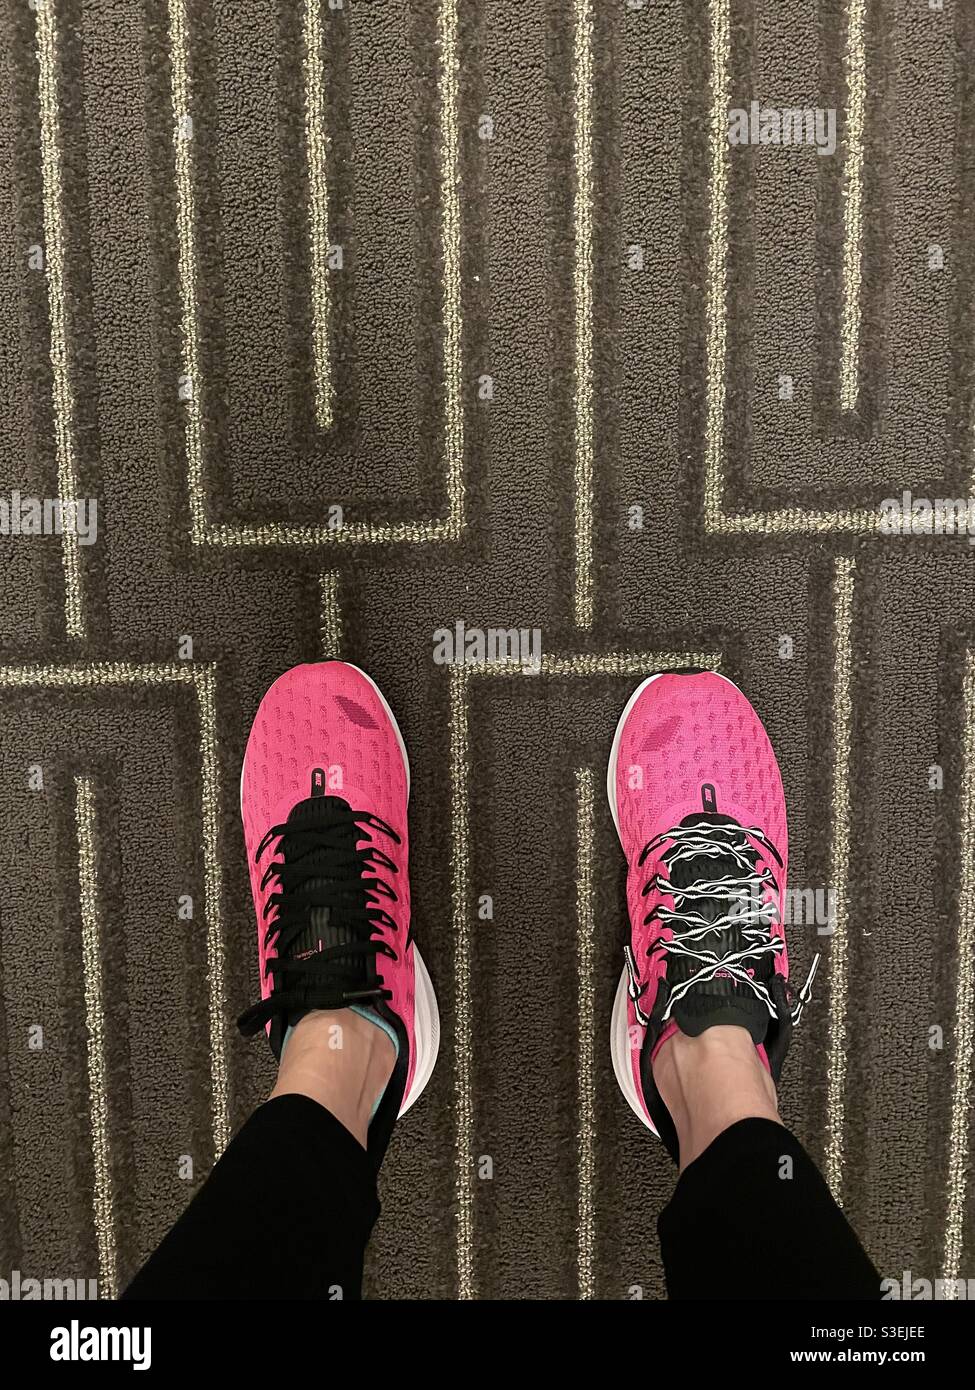 Damen Paar heiße pinke Nike Sportschuhe mit nicht übereinstimmenden  Schnürsenkel auf einem Teppich Stockfotografie - Alamy